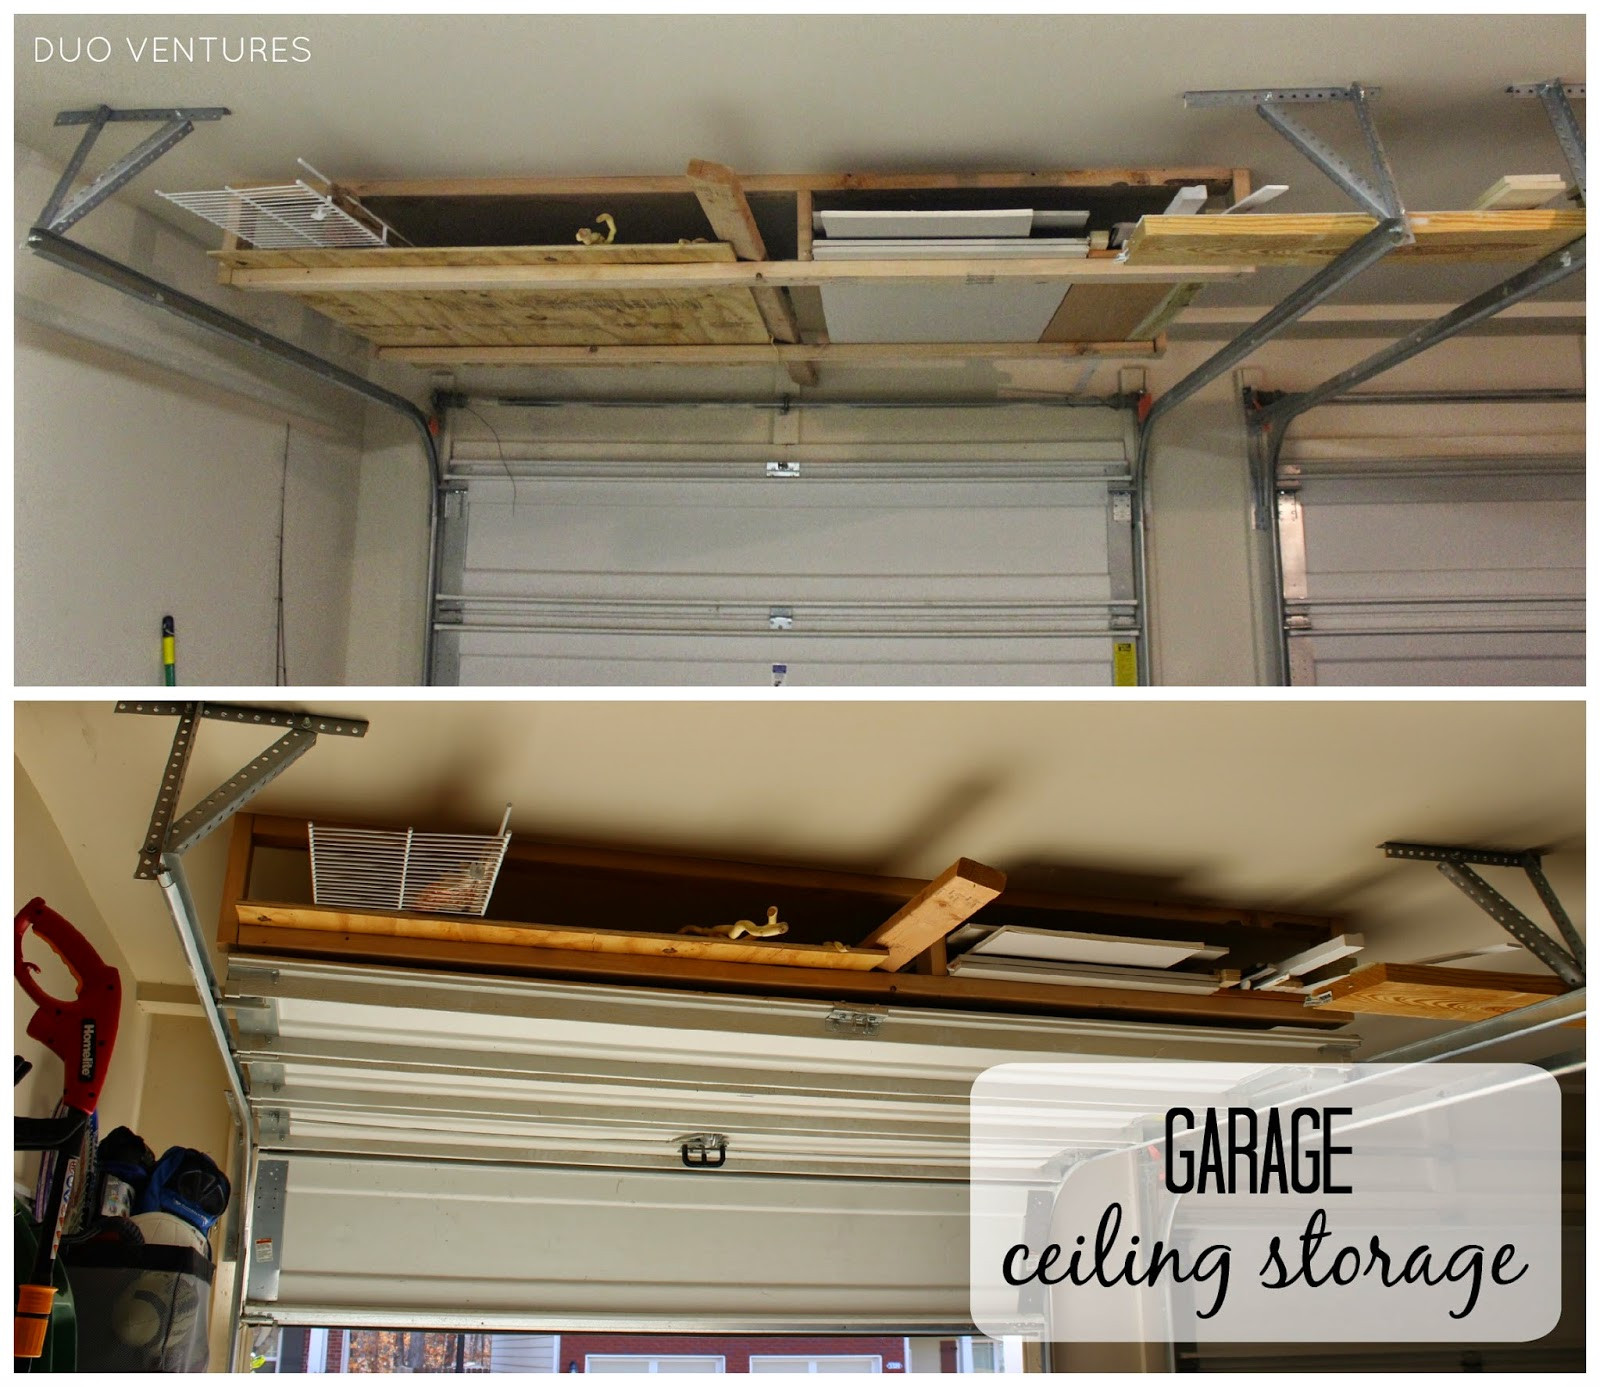 Best ideas about Garage Ceiling Storage
. Save or Pin Duo Ventures The Garage Ceiling Storage Now.